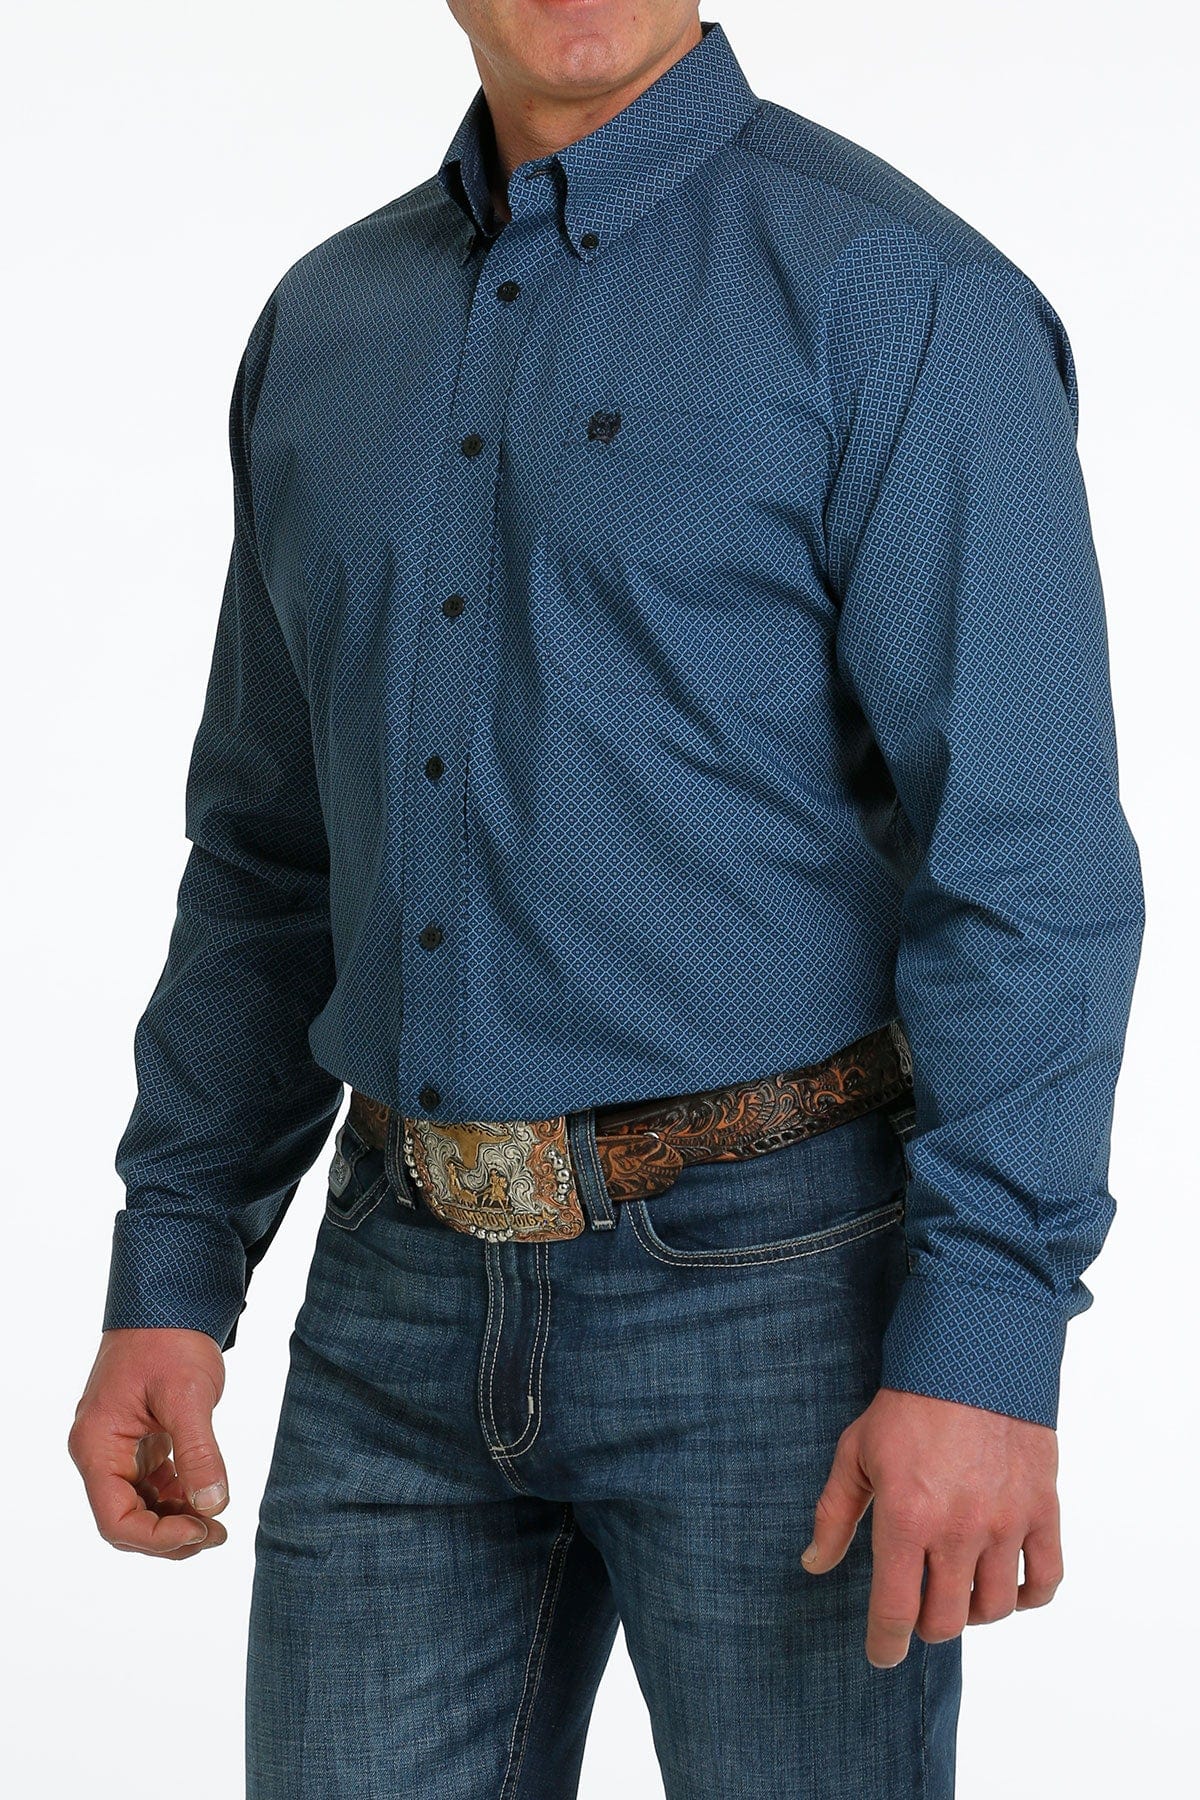 Buy Slim Fit Solid Navy Shirts for Men Online at Killer Jeans | 487489